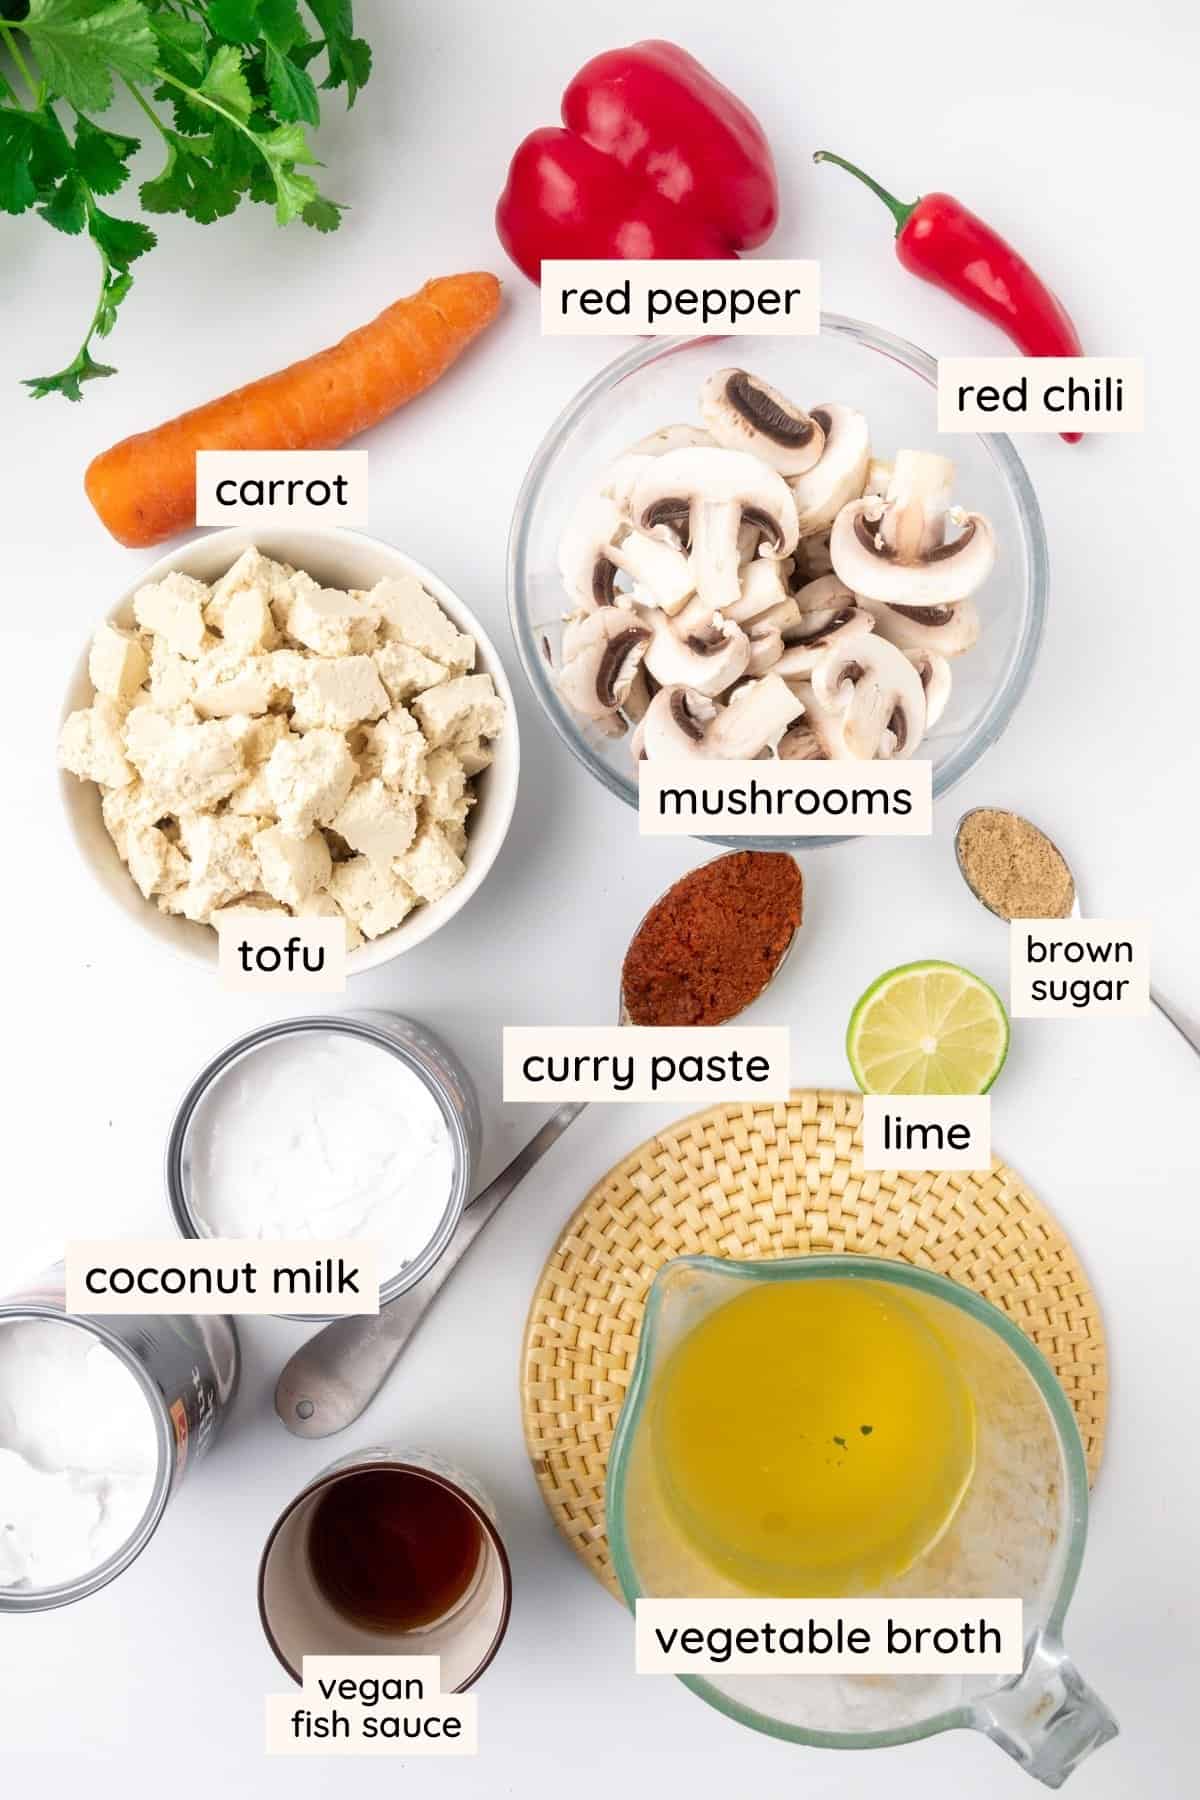 Συστατικά: καρότο, κόκκινη πιπεριά, κόκκινο τσίλι, μανιτάρια, τόφου, γάλα καρύδας, πάστα κάρυ, λάιμ, καστανή ζάχαρη.  vegan σάλτσα ψαριού και ζωμό λαχανικών.